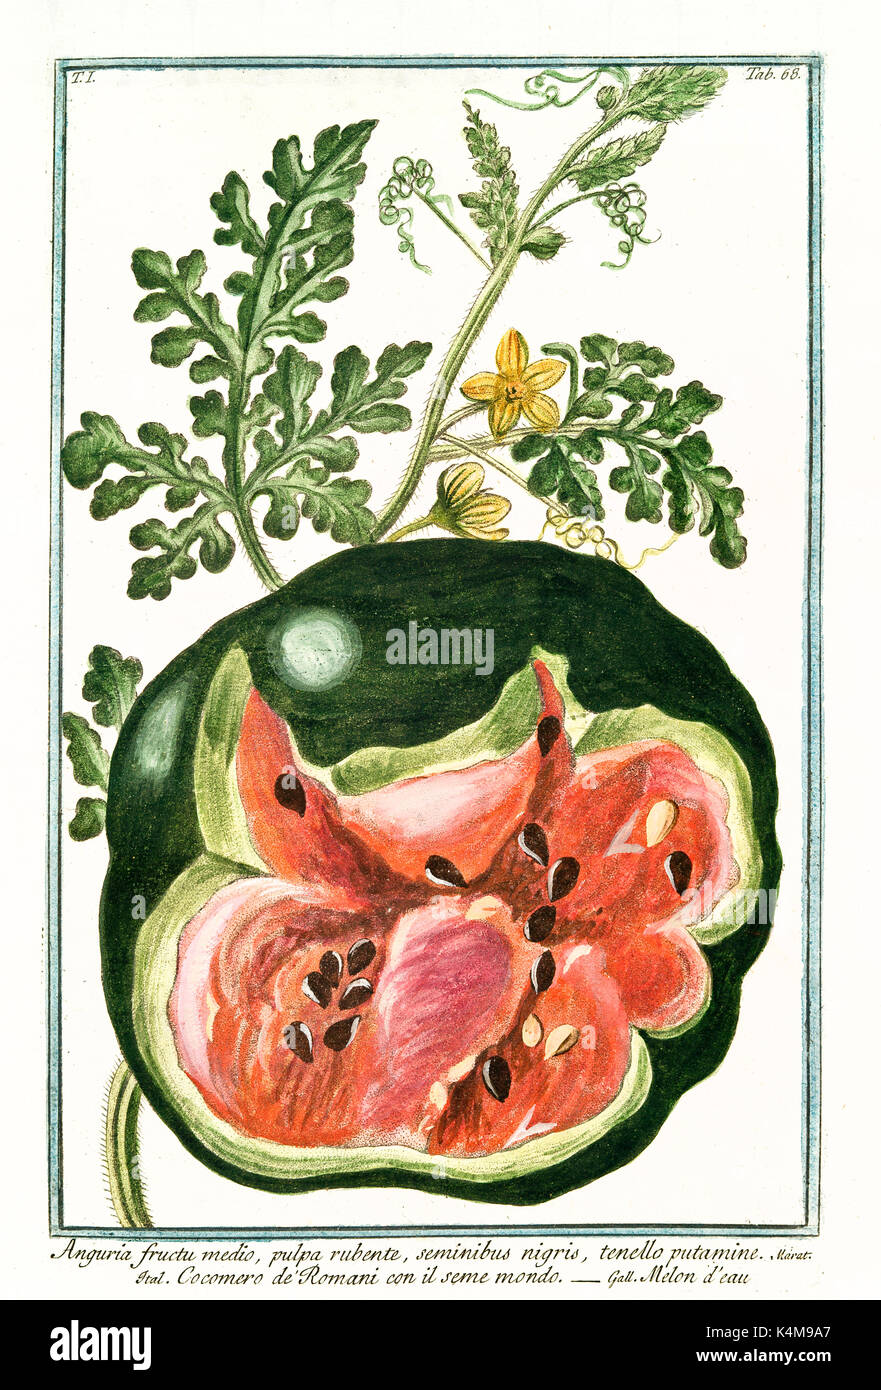 Old illustration of Anguria fructu medio (Citrullus lanatus). By G. Bonelli on Hortus Romanus, publ. N. Martelli, Rome, 1772 – 93 Stock Photo